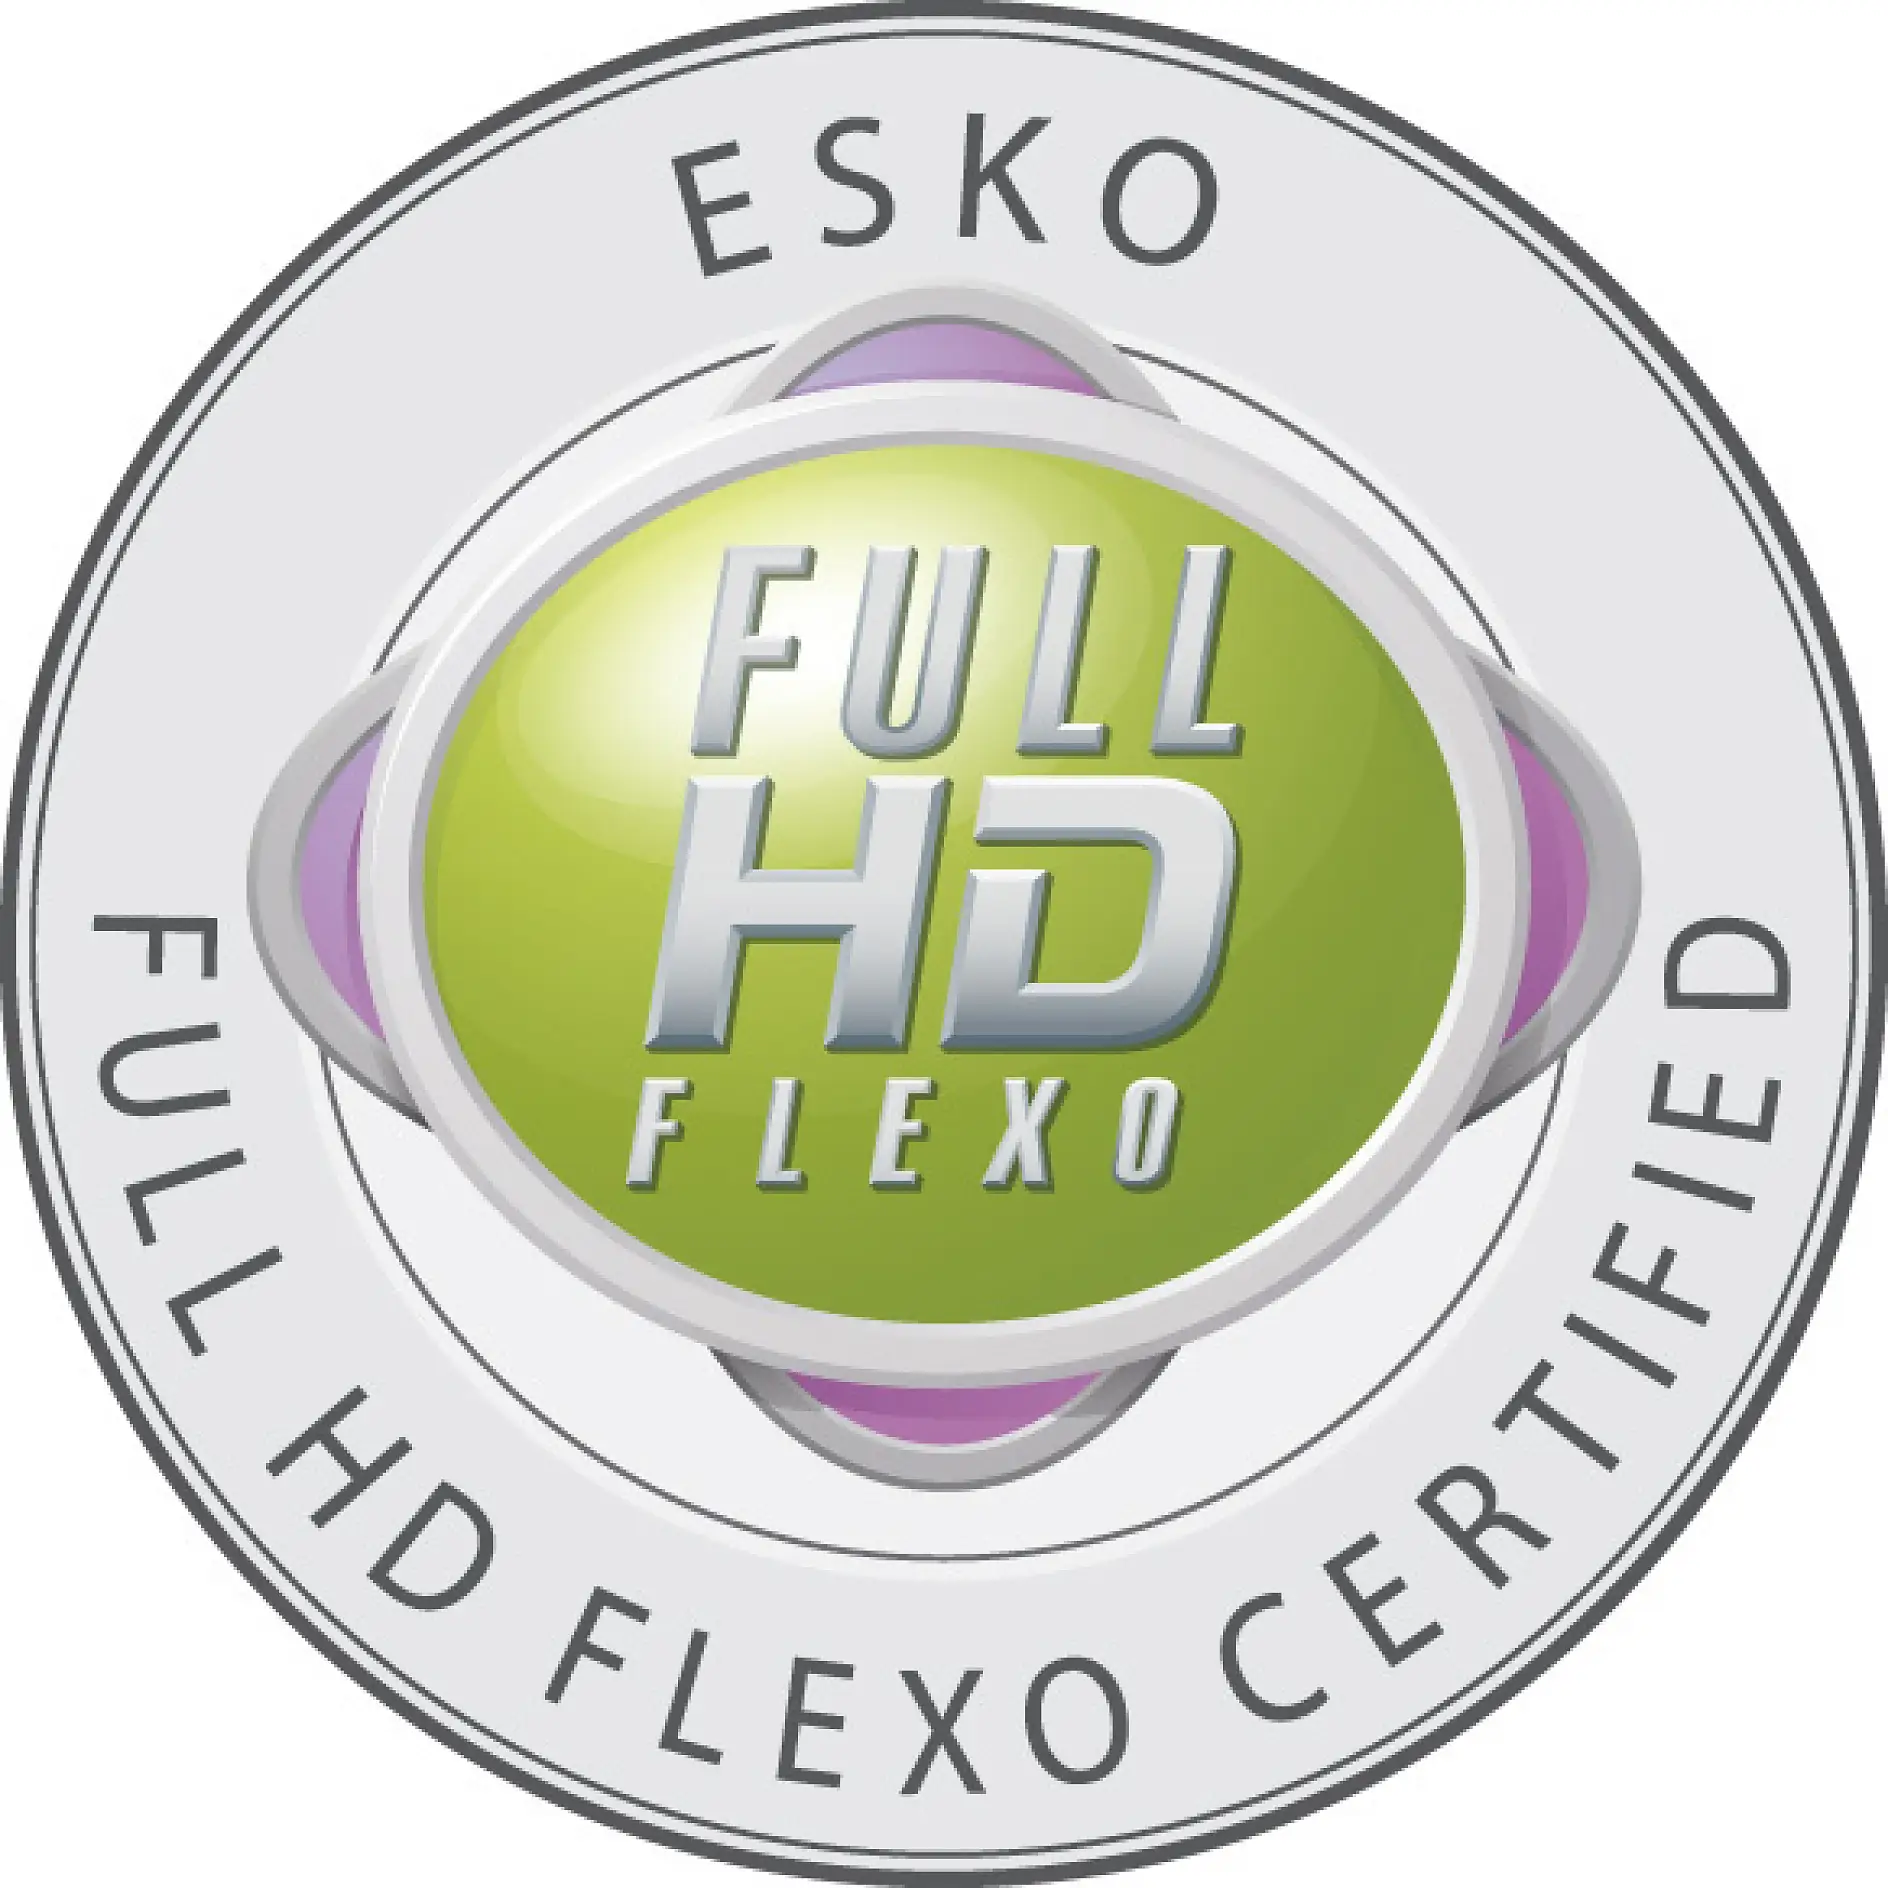 Hanya perusahaan yang tersertifikasi dibolehkan membawa tanda pengenal Full HD Flexo